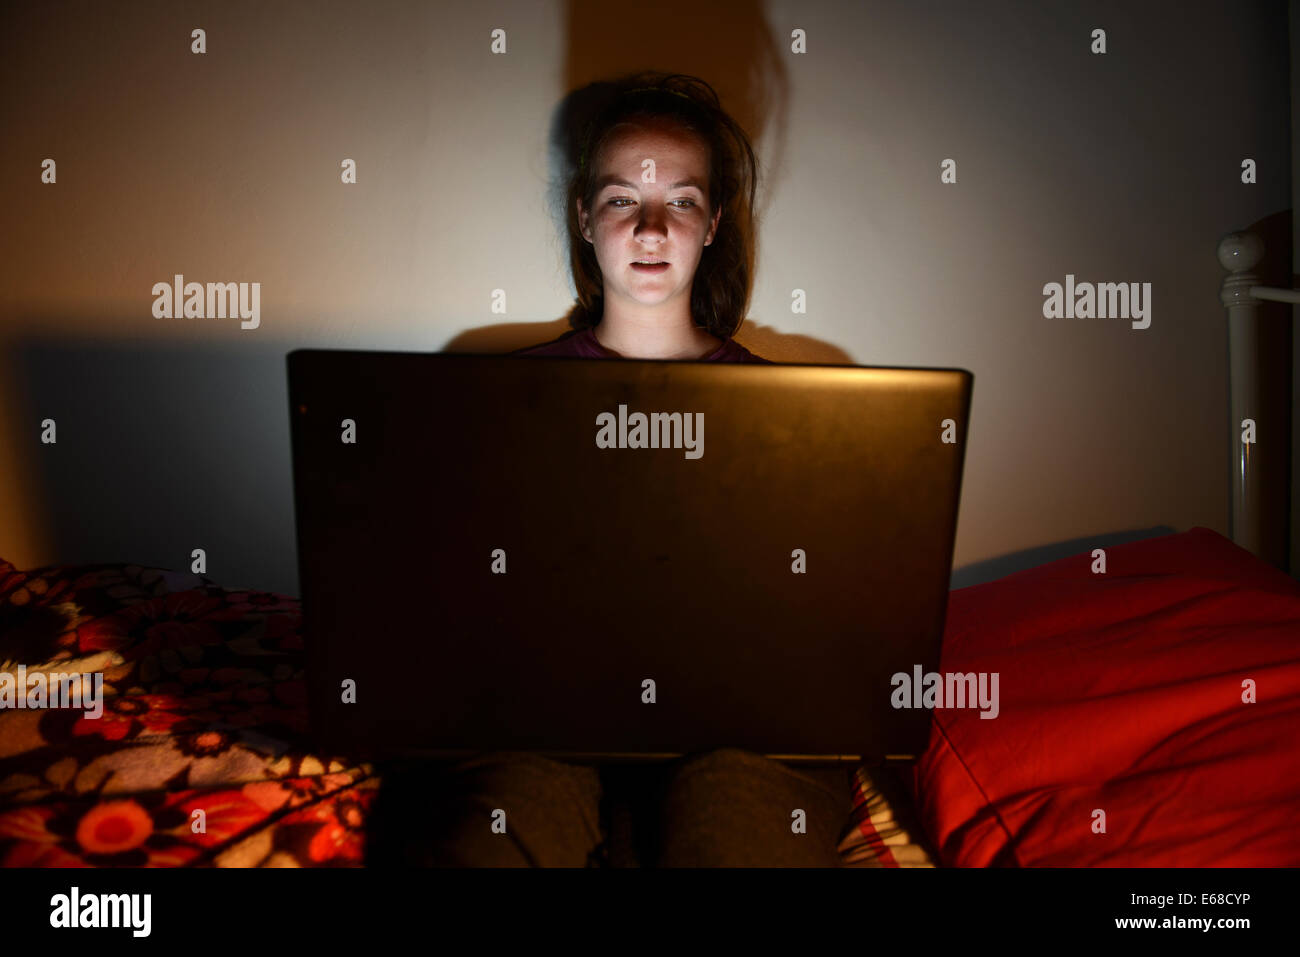 Computer Laptop verwendet wird, von einem Kind in ihr Schlafzimmer, teenage Girl mit einem Computer Laptop allein in ihrem Zimmer Stockfoto